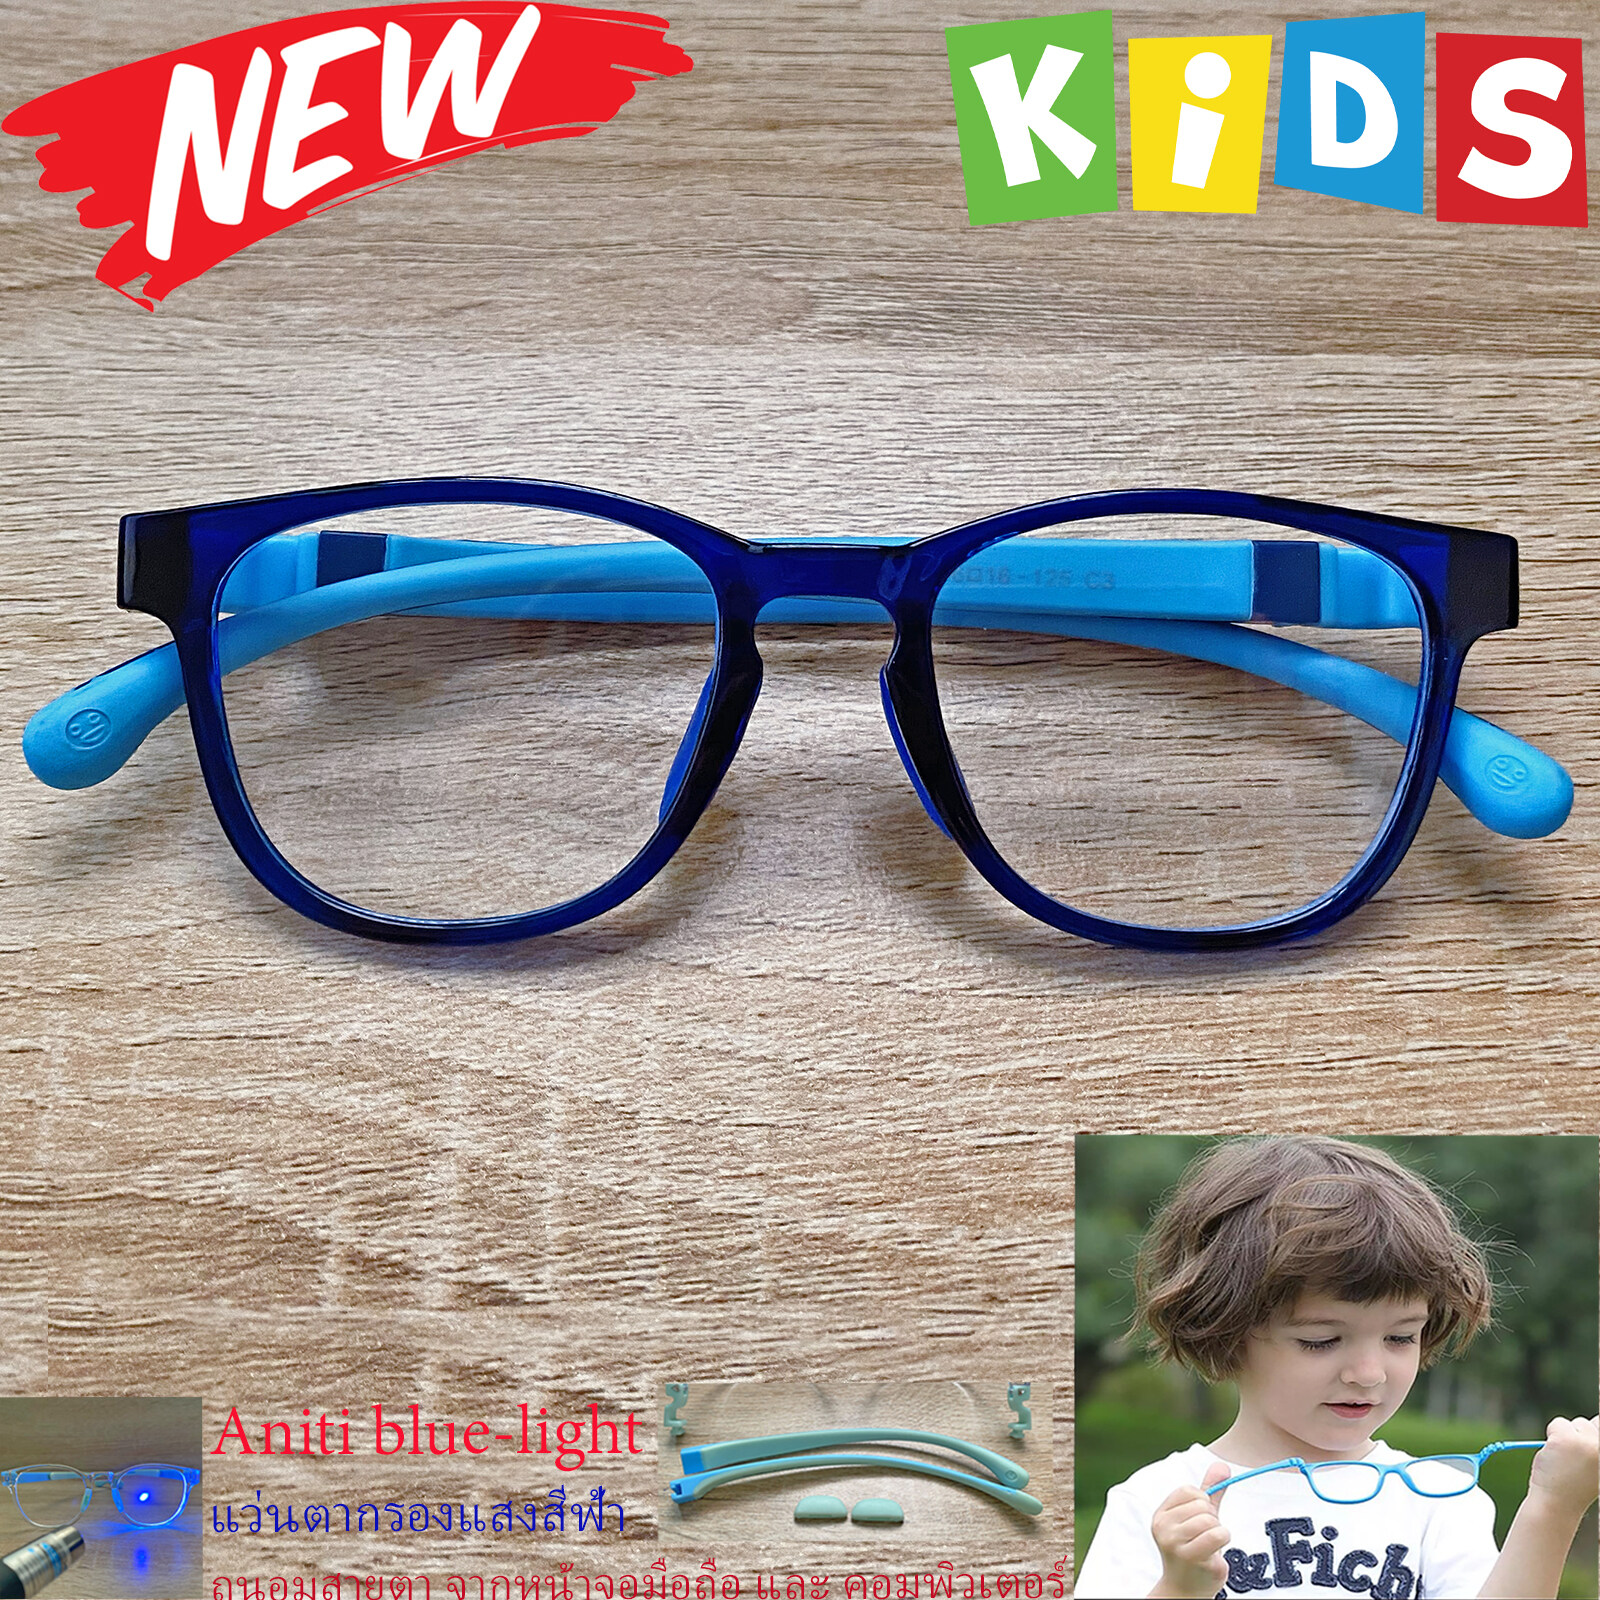 แว่นตาเด็ก กรองแสงสีฟ้า blue block แว่นเด็ก บลูบล็อค รุ่น 06 สีน้ำเงิน ขาข้อต่อยืดหยุ่น ถอดขาเปลี่ยนได้ วัสดุTR90 เหมาะสำหรับเลนส์สายตา